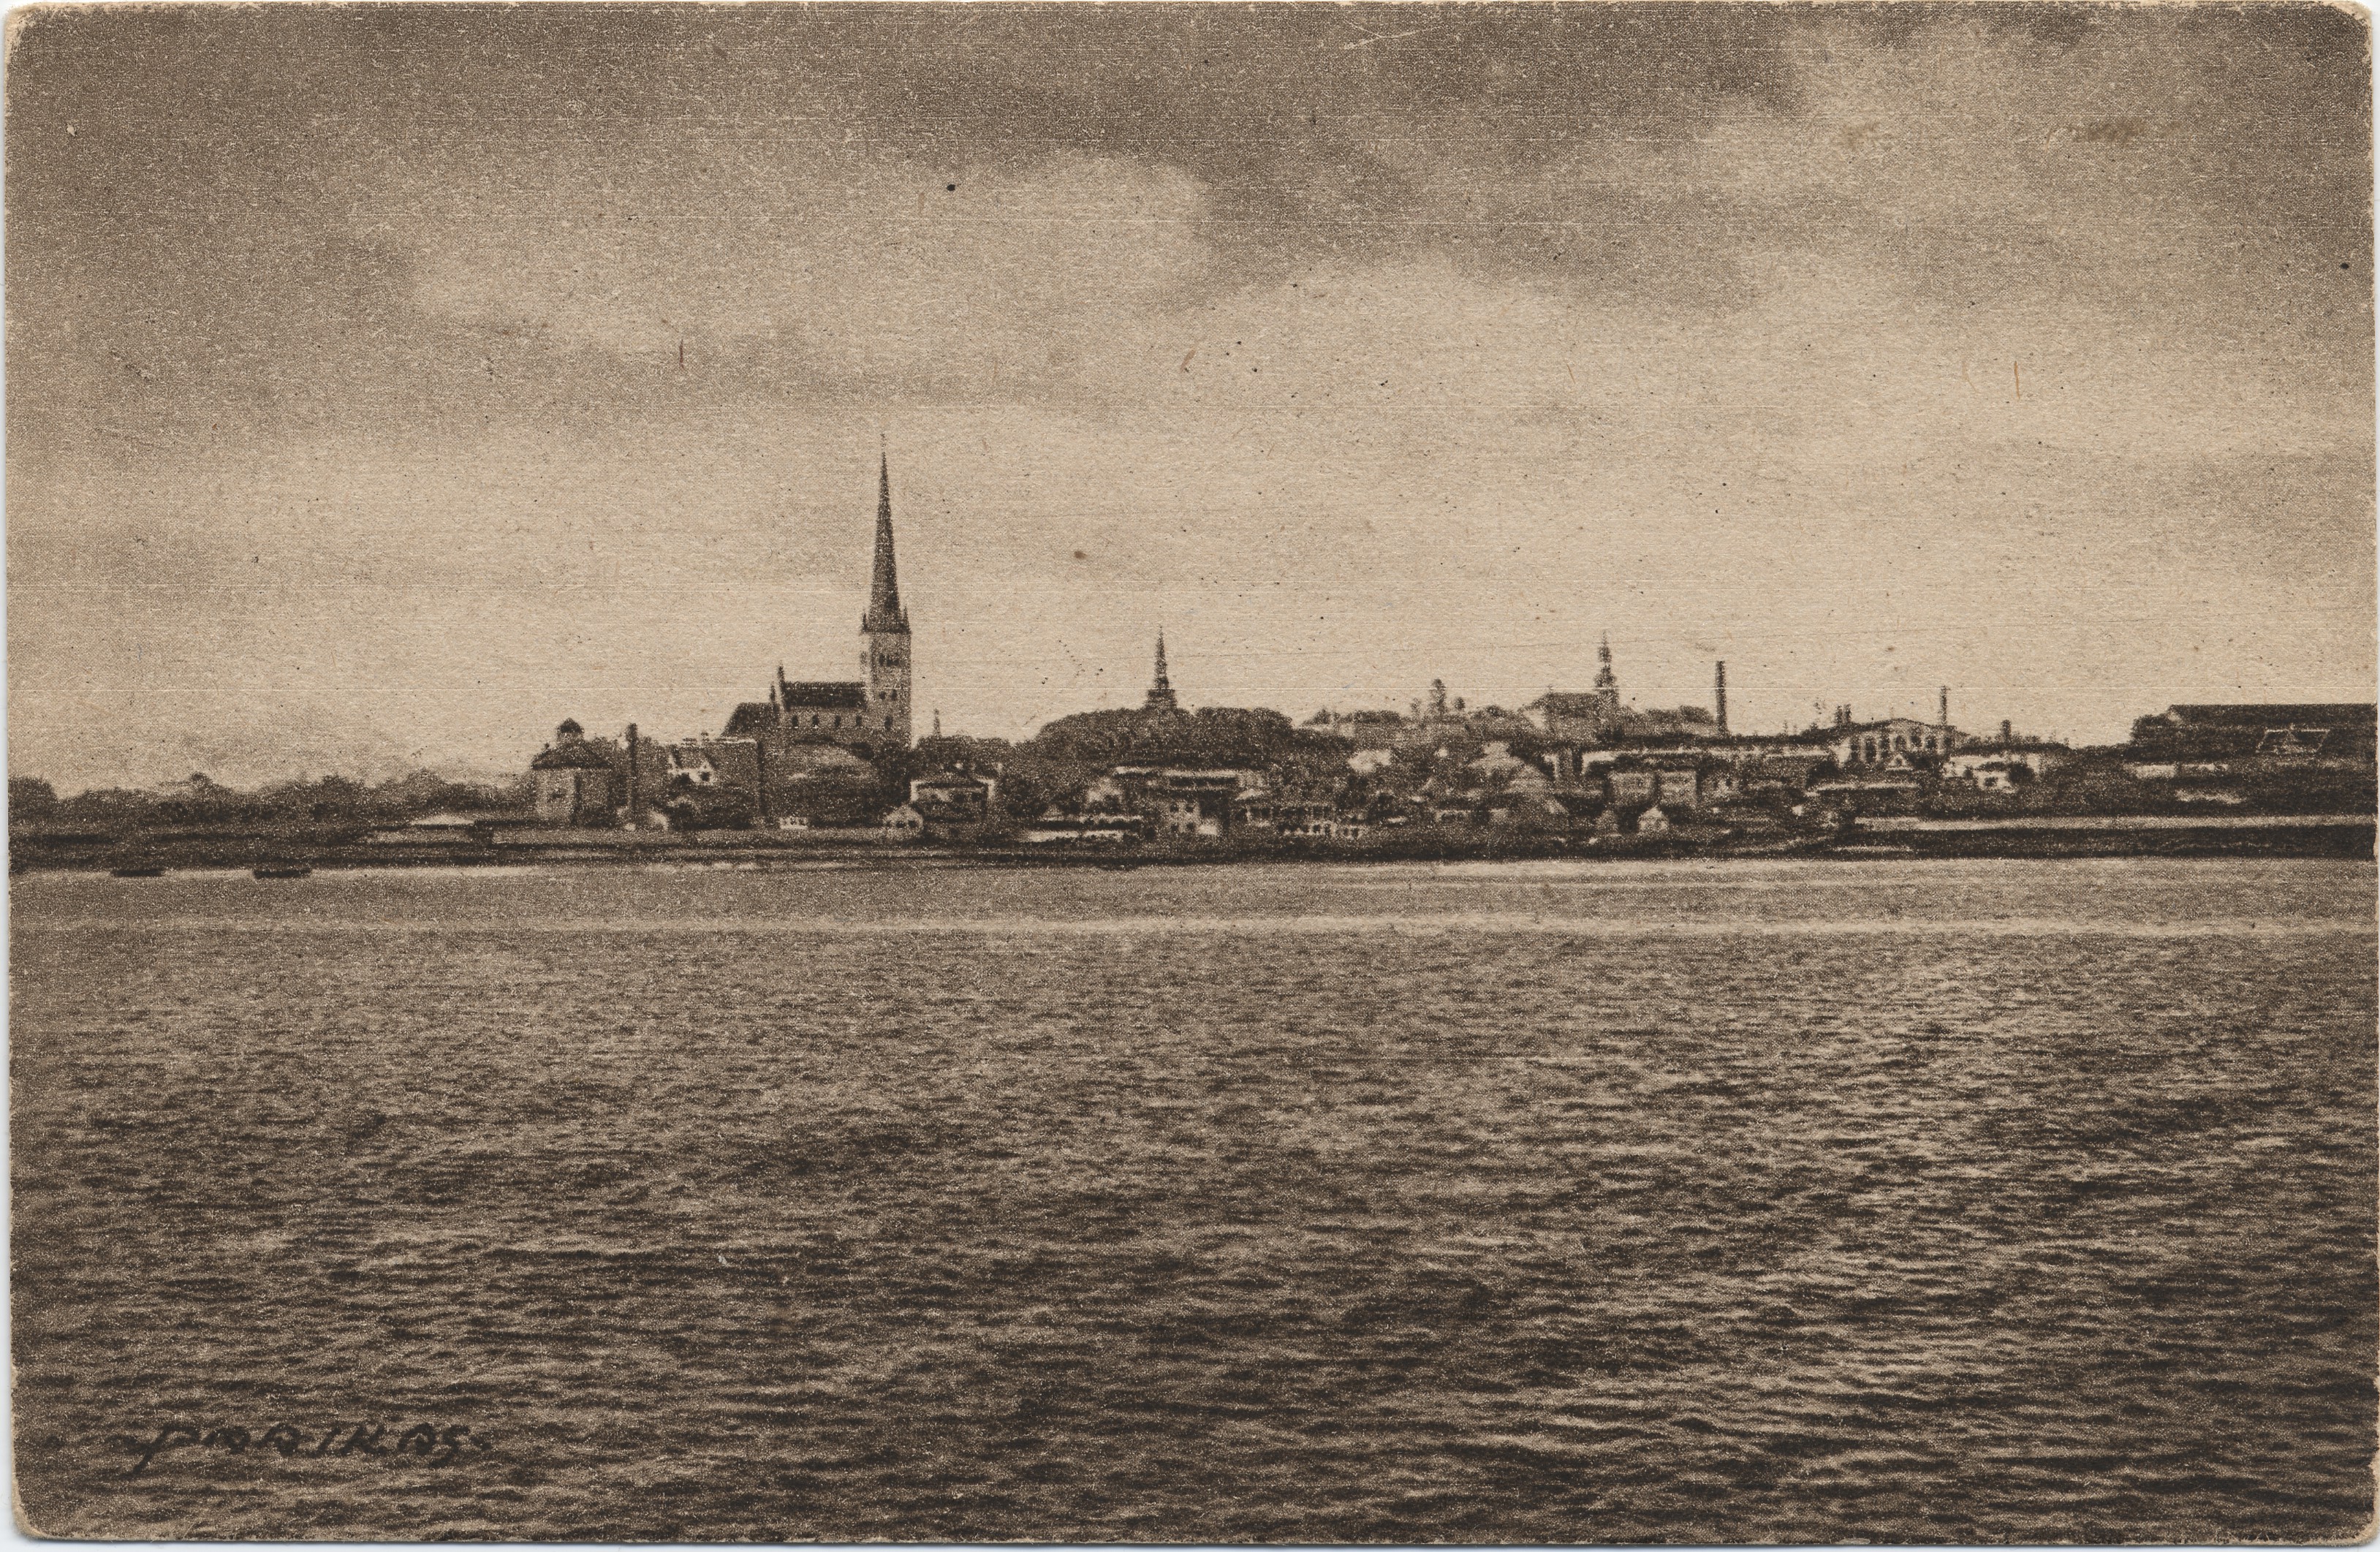 Reval : Totalansicht vom Hafen aus = Tallinn : view of the port